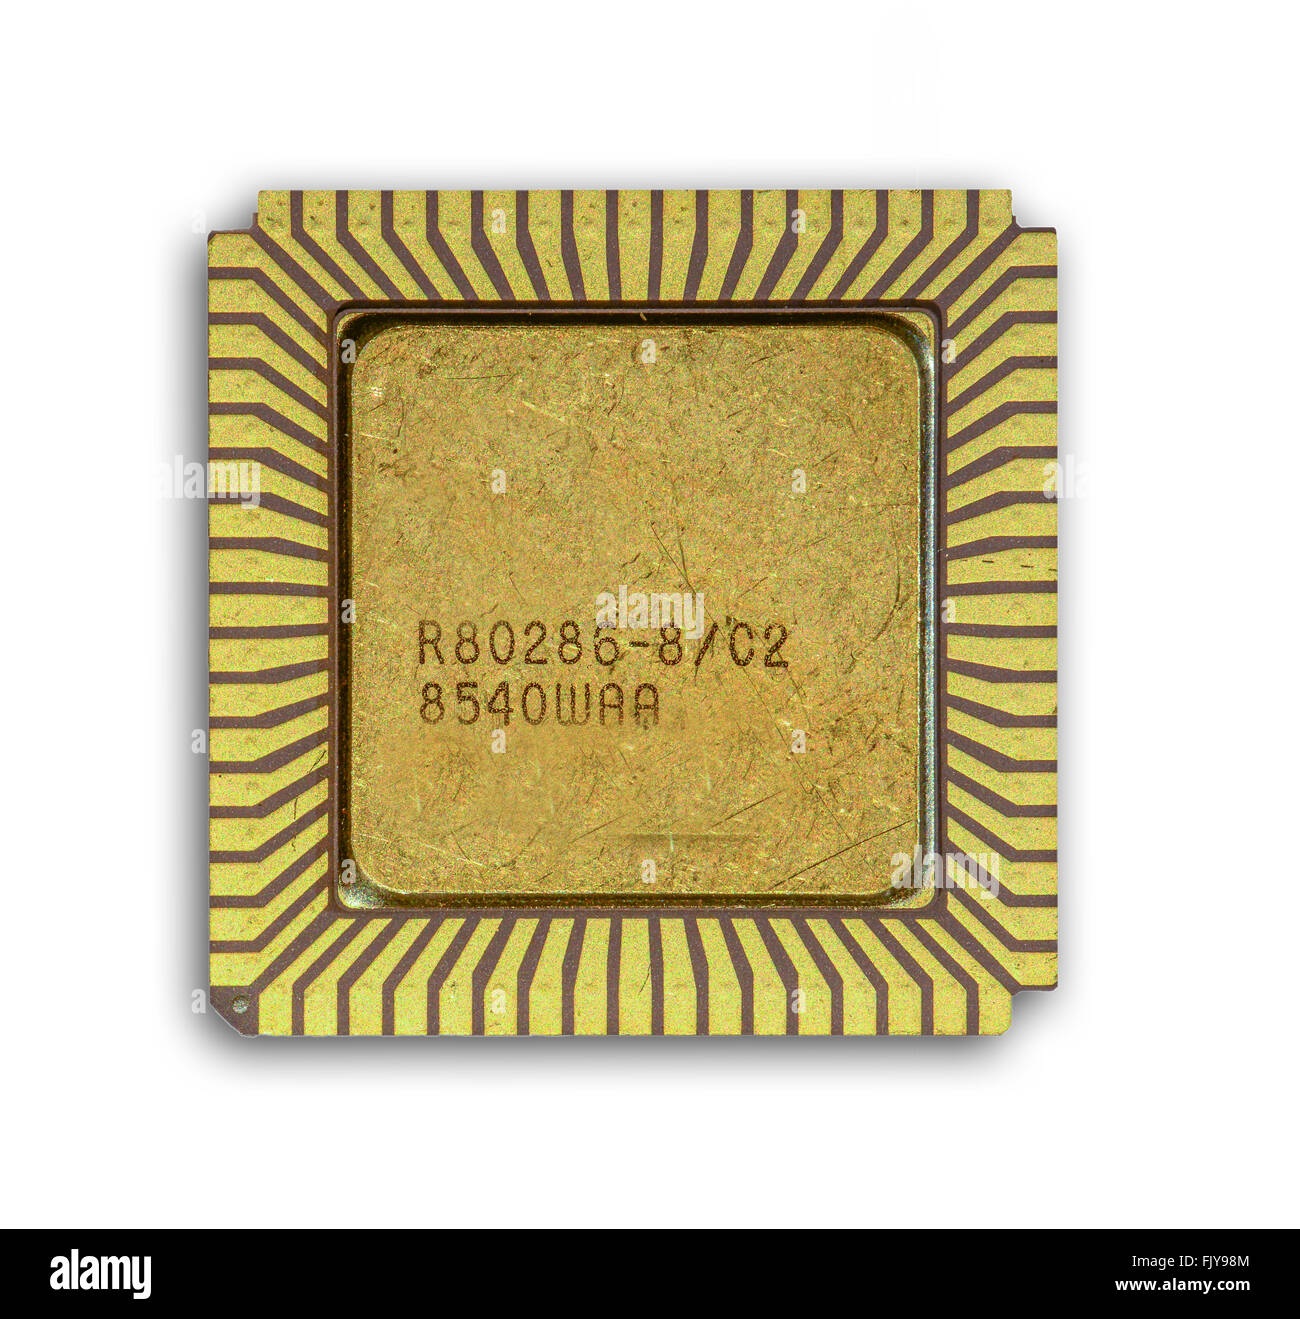 Un singolo di ceramica Vintage 80286 CPU Foto Stock